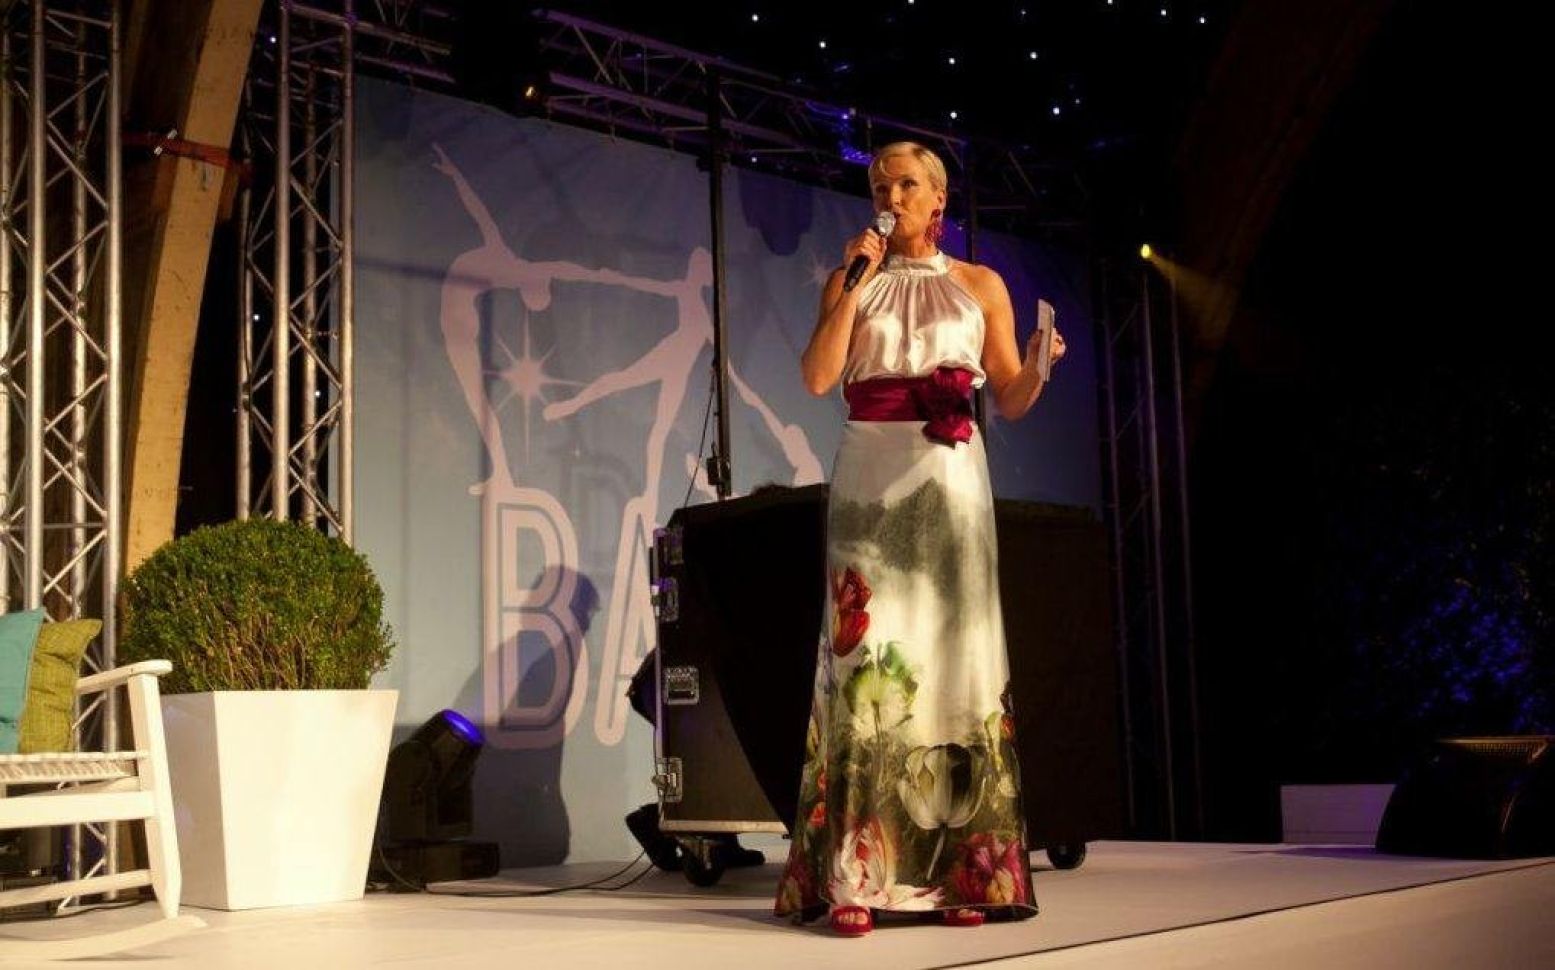 Anita Witzier presenteert het HDI Gala in een jurk van Covers Couture. Foto: HDI.